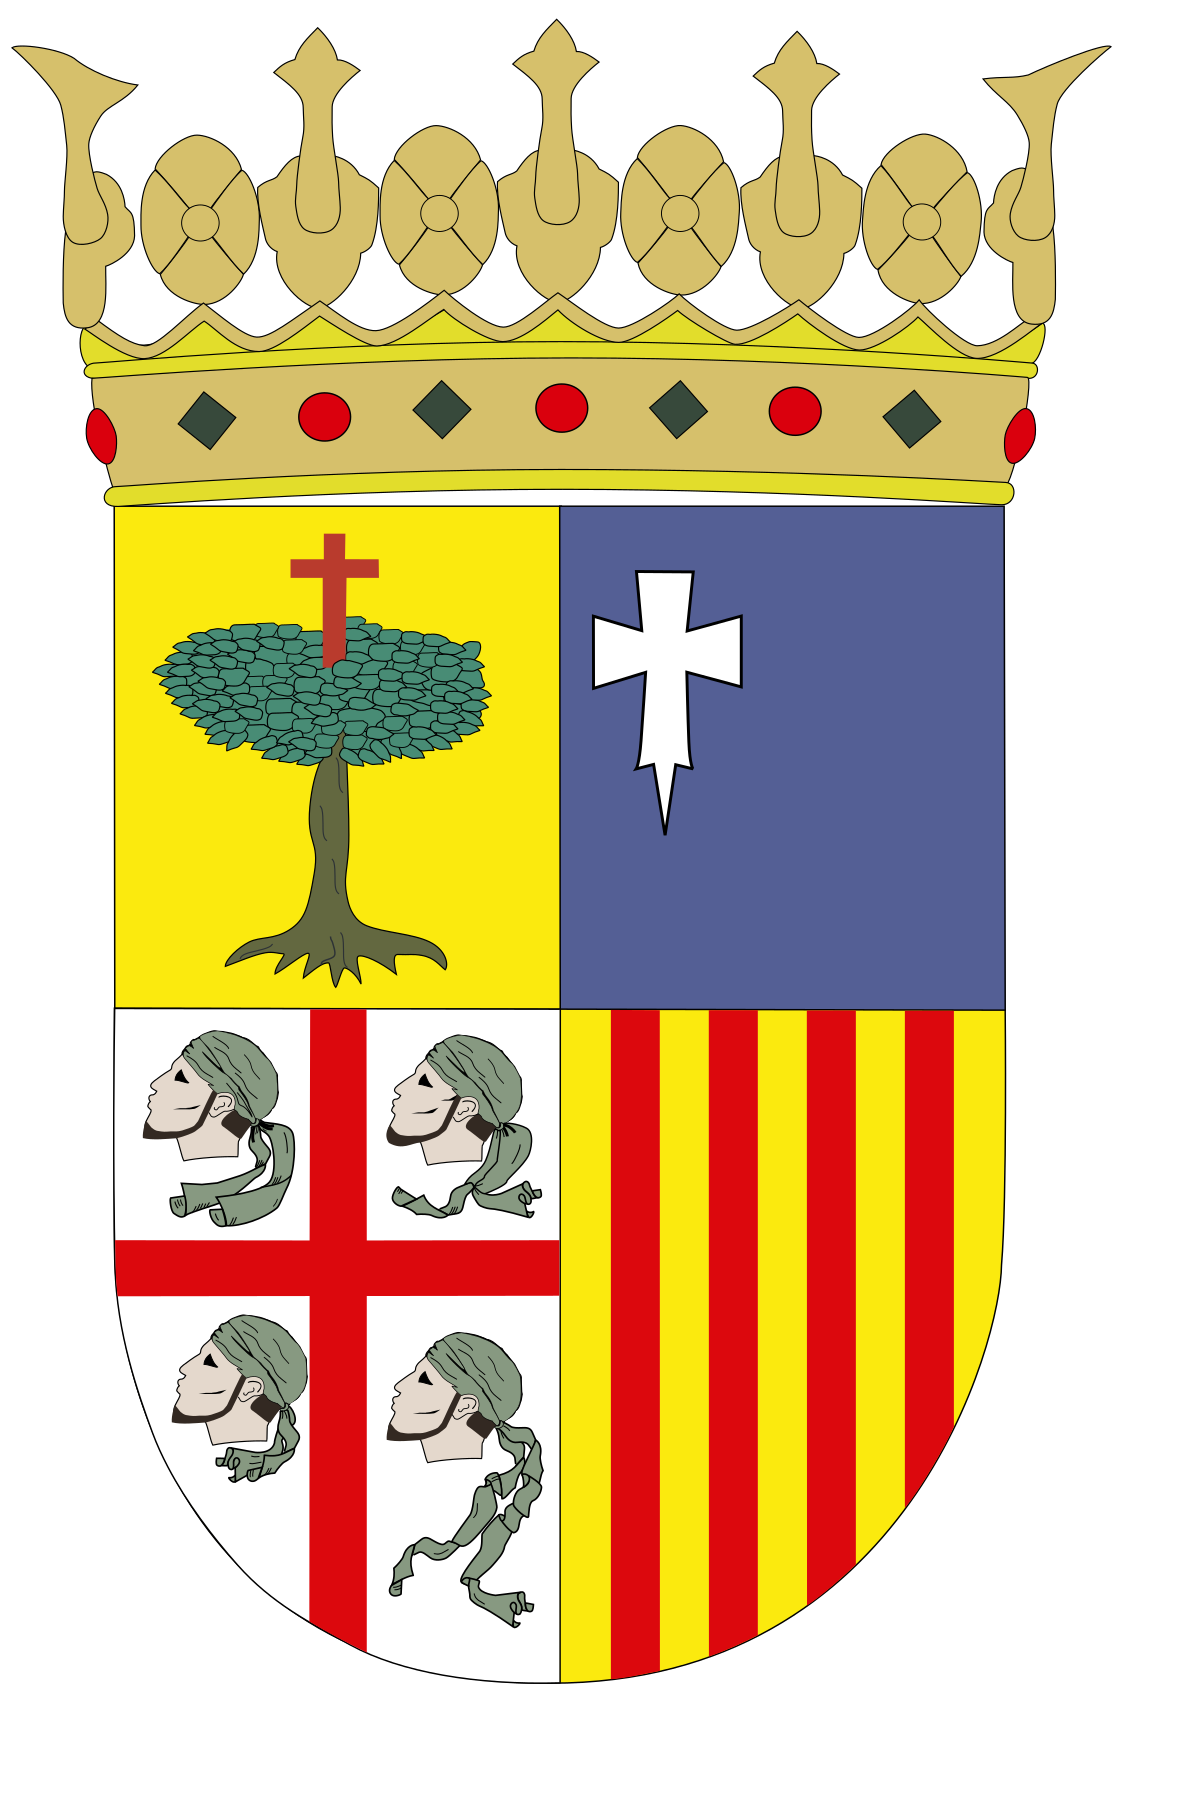 Escudo de Aragón - Wikipedia, la enciclopedia libre